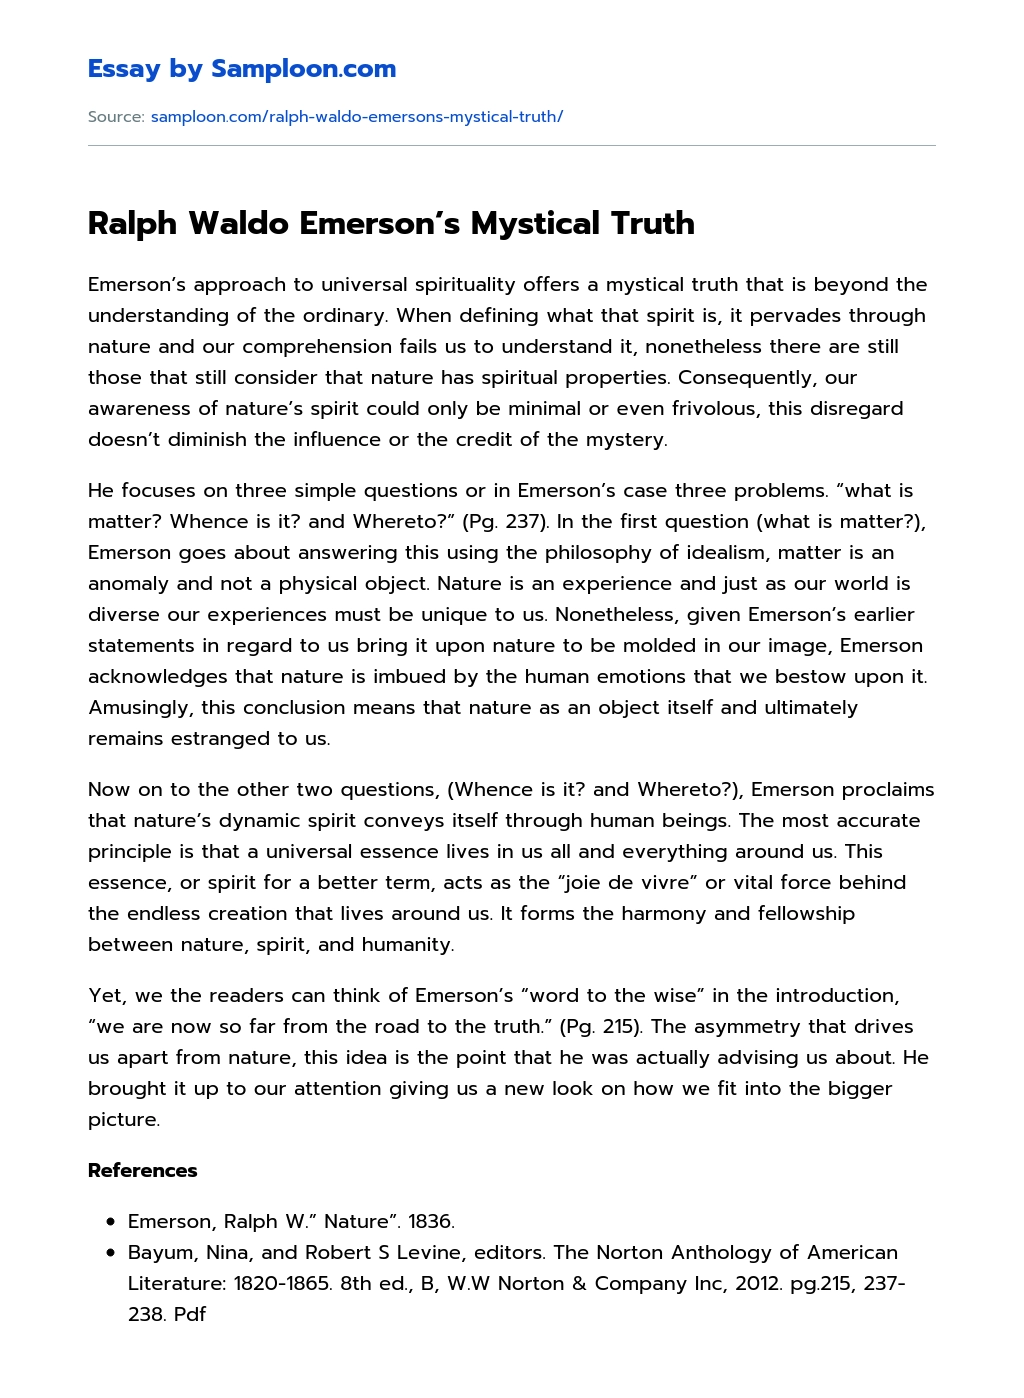 Ralph Waldo Emerson’s Mystical Truth essay